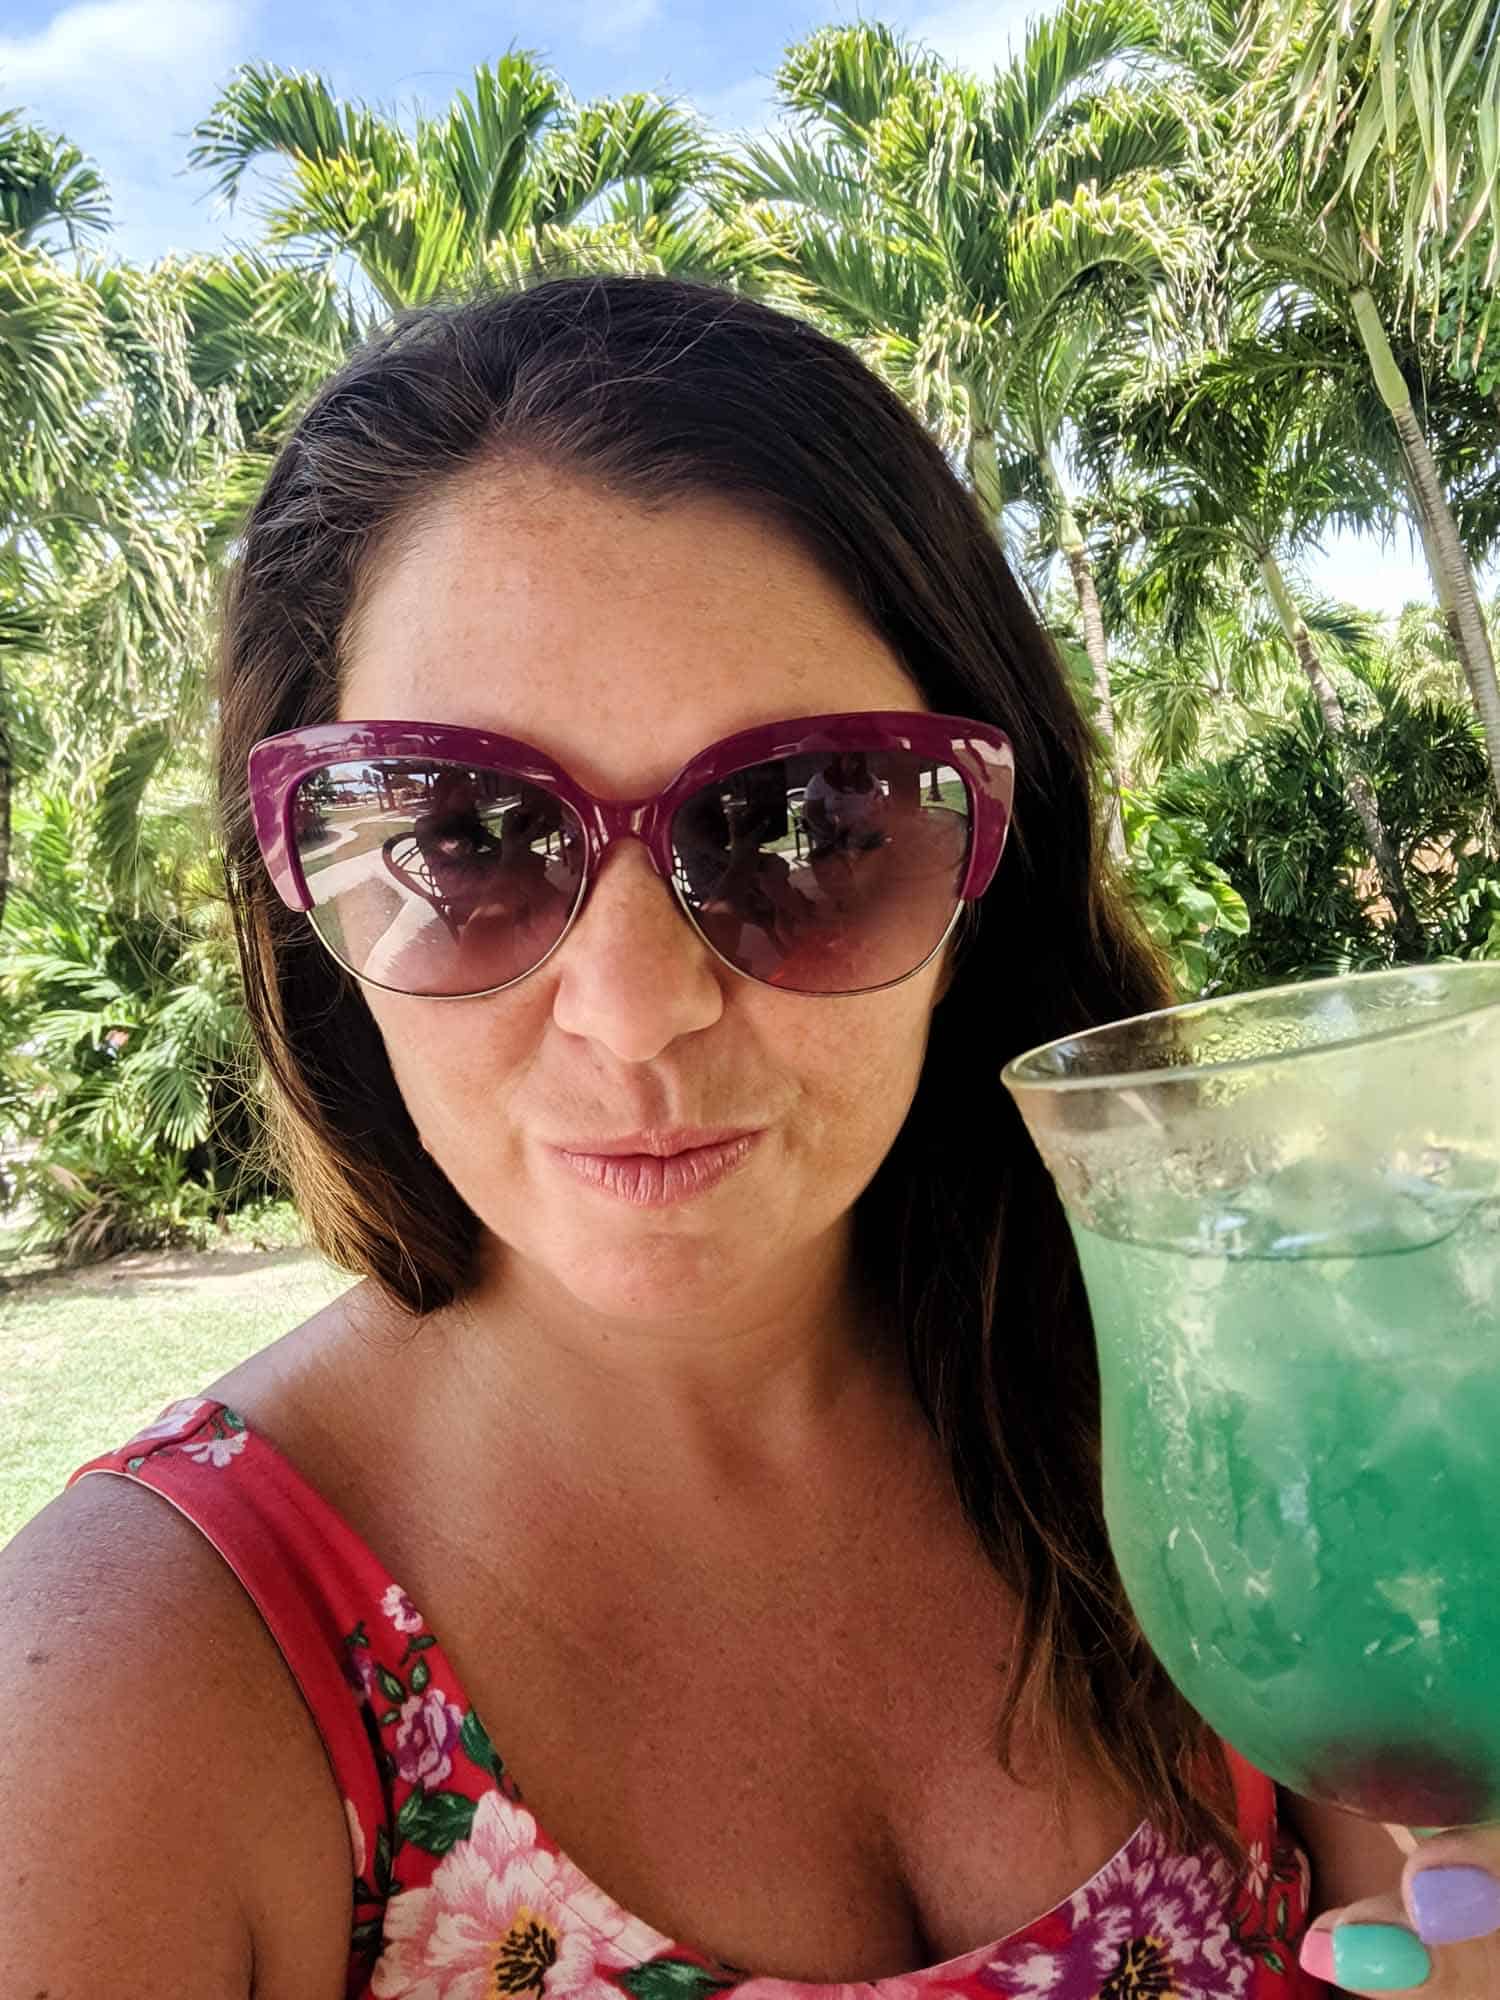 Tropical beach drink